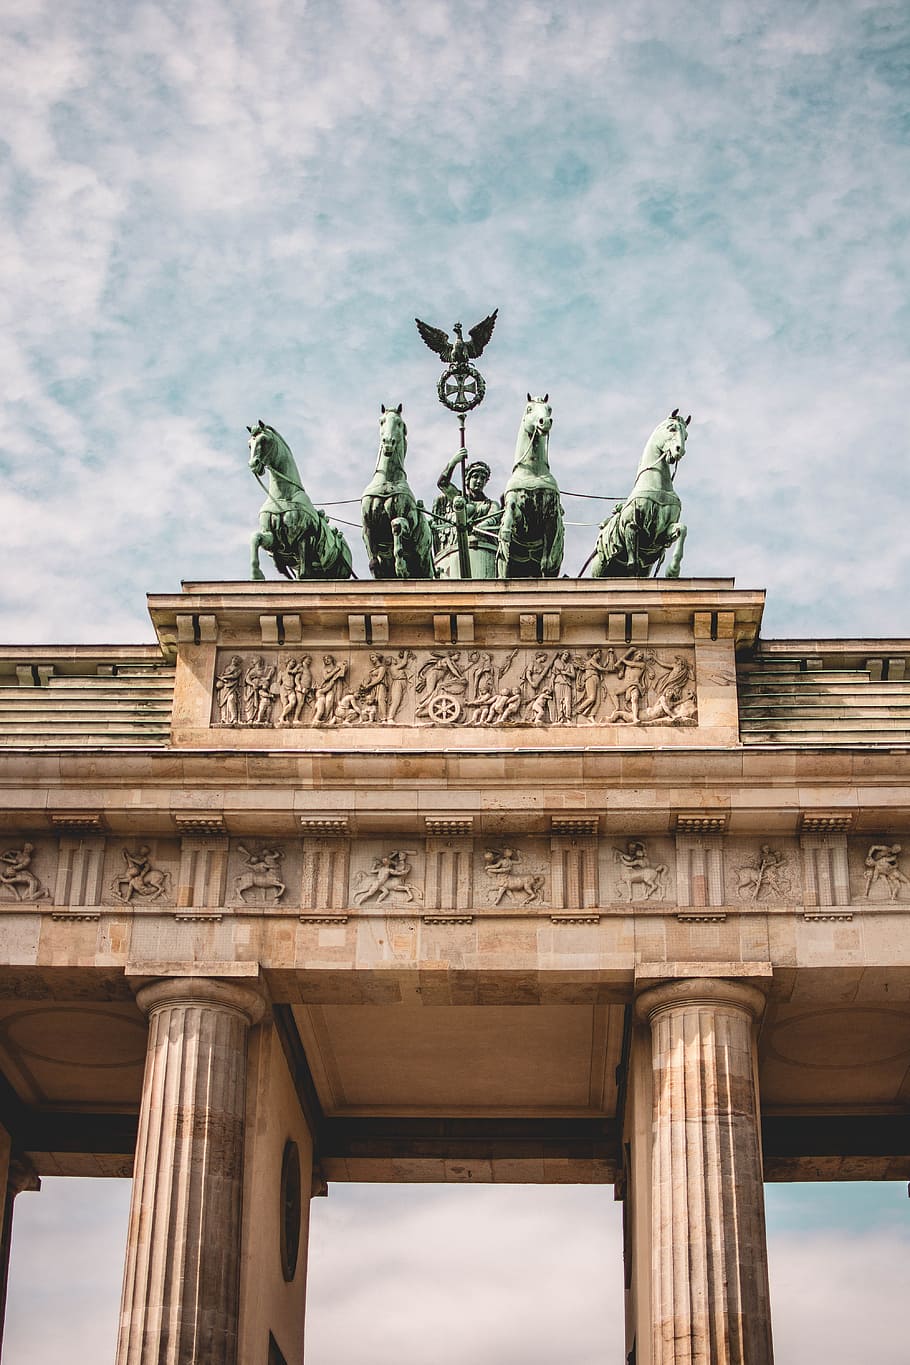 horses statue, brandenburg gate, berlin, goal, landmark, building